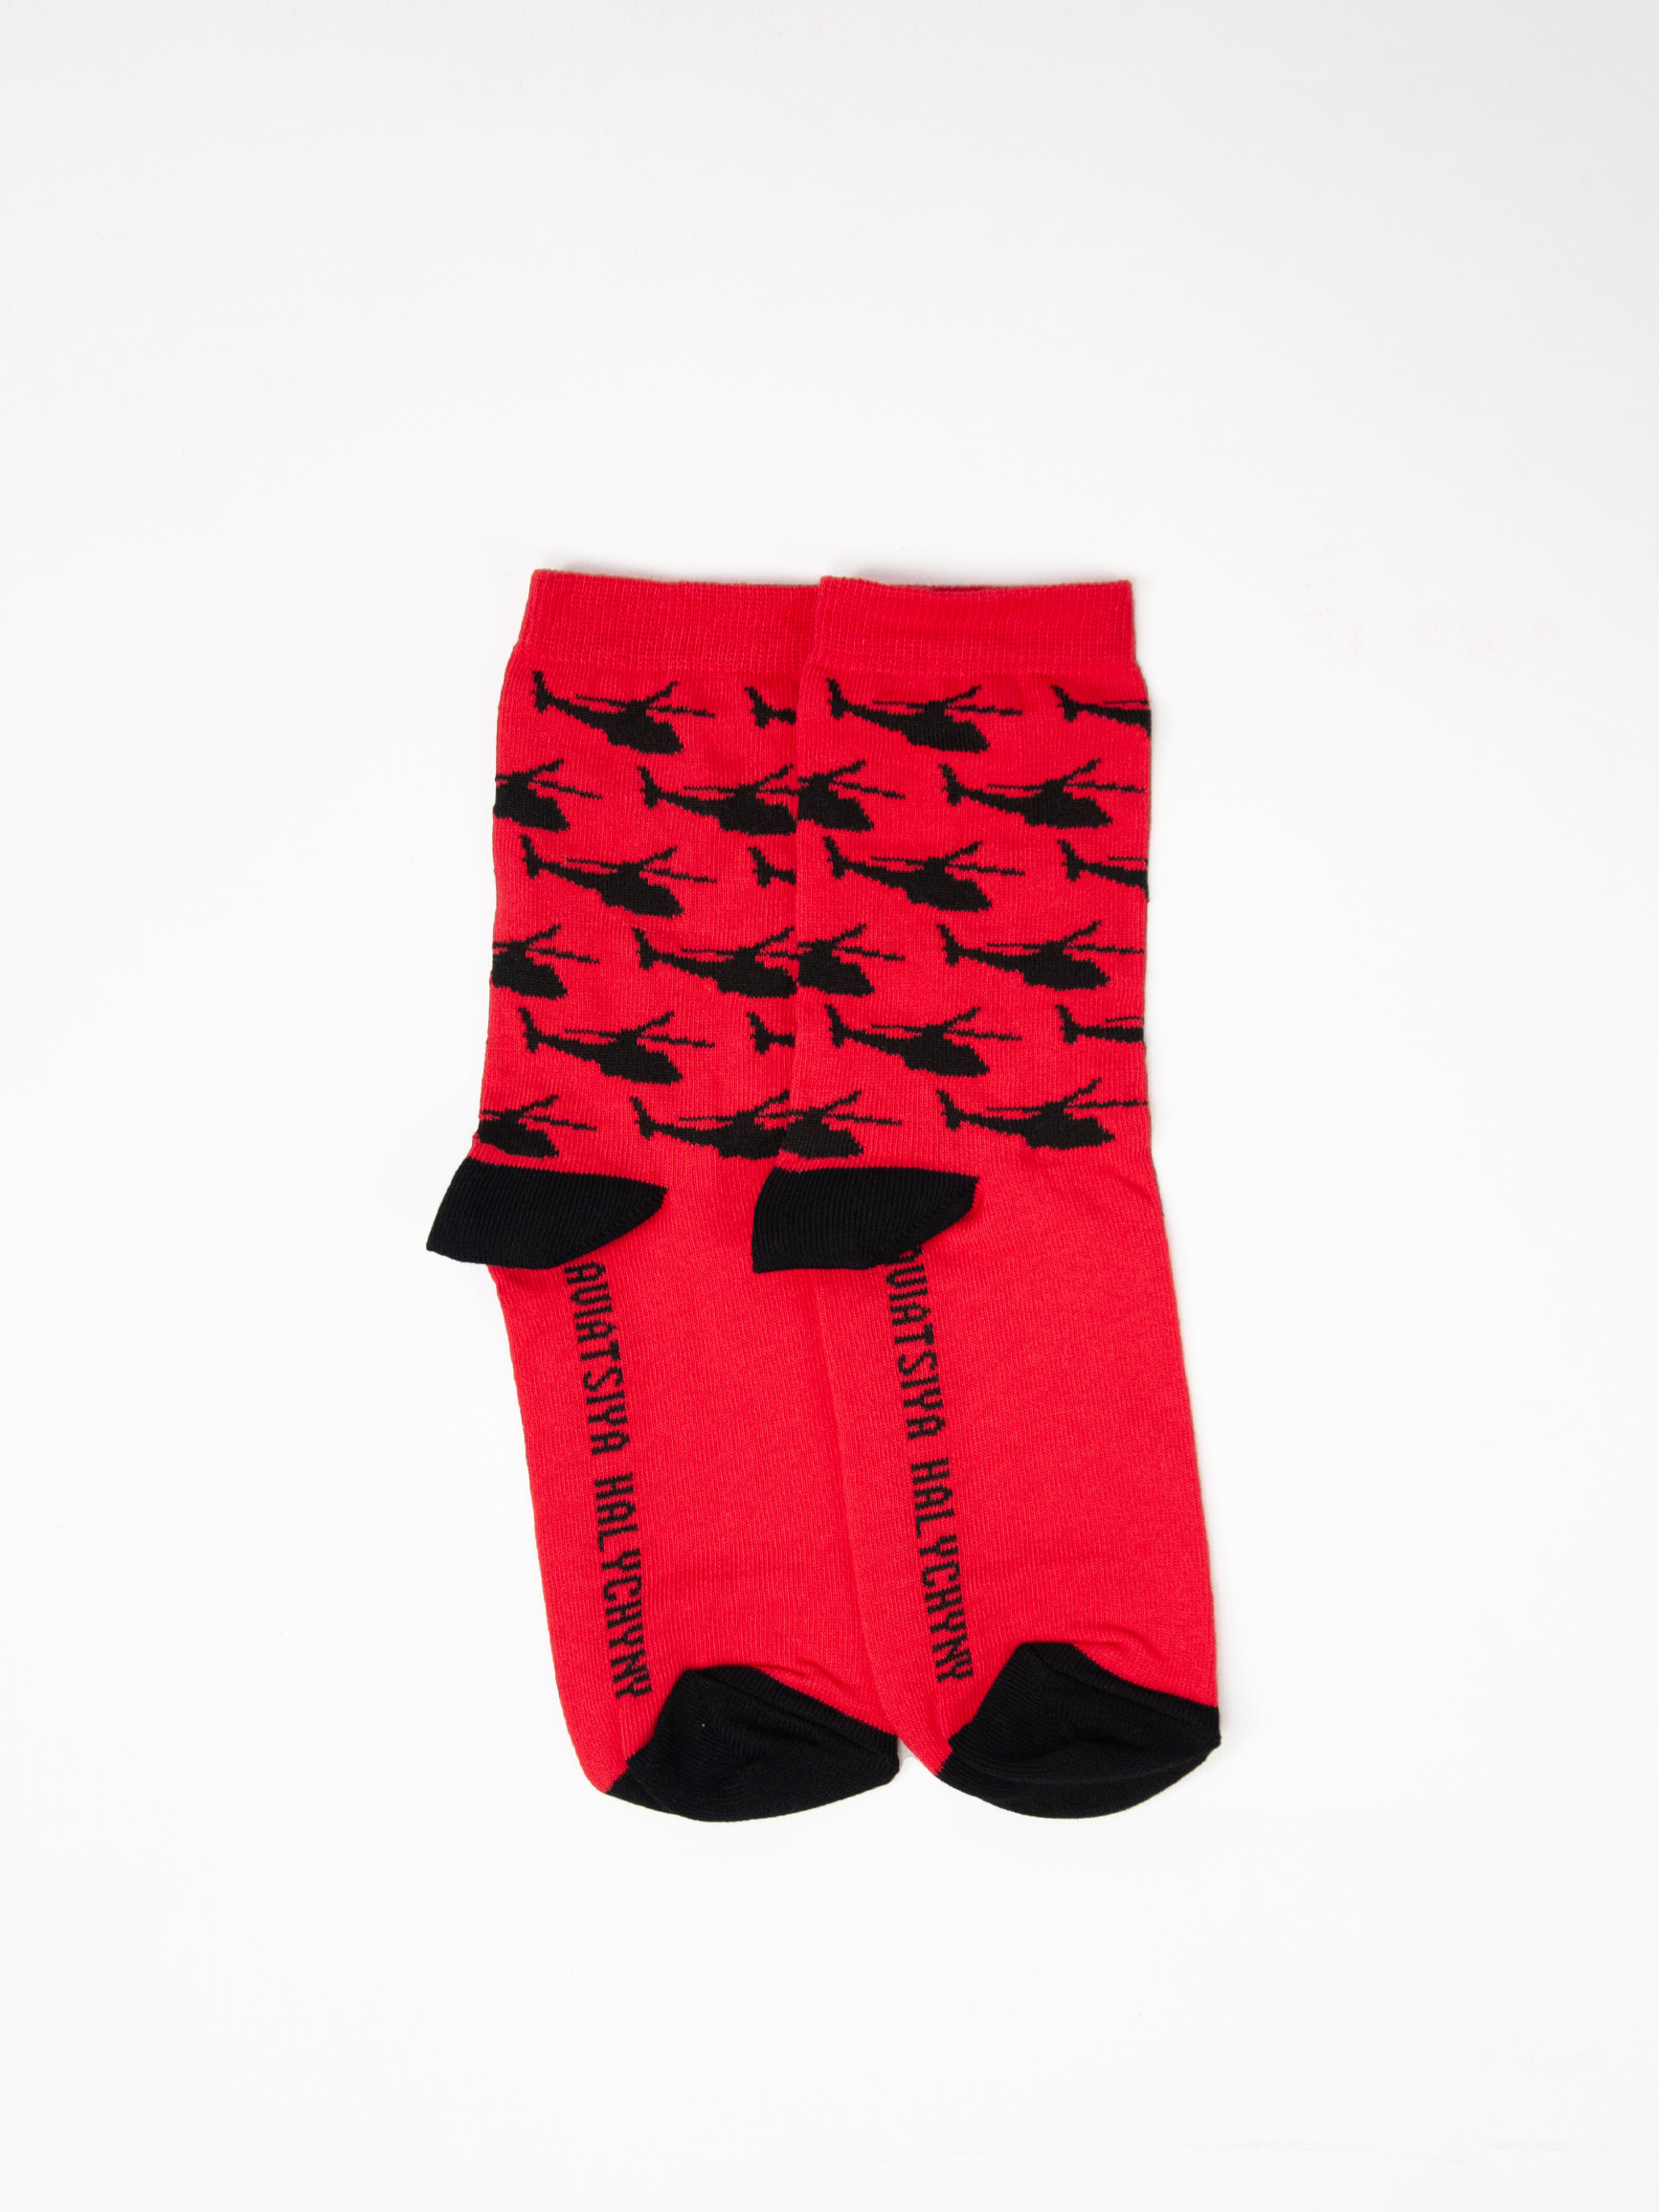 Socks Sikorsky. Color red. 1.